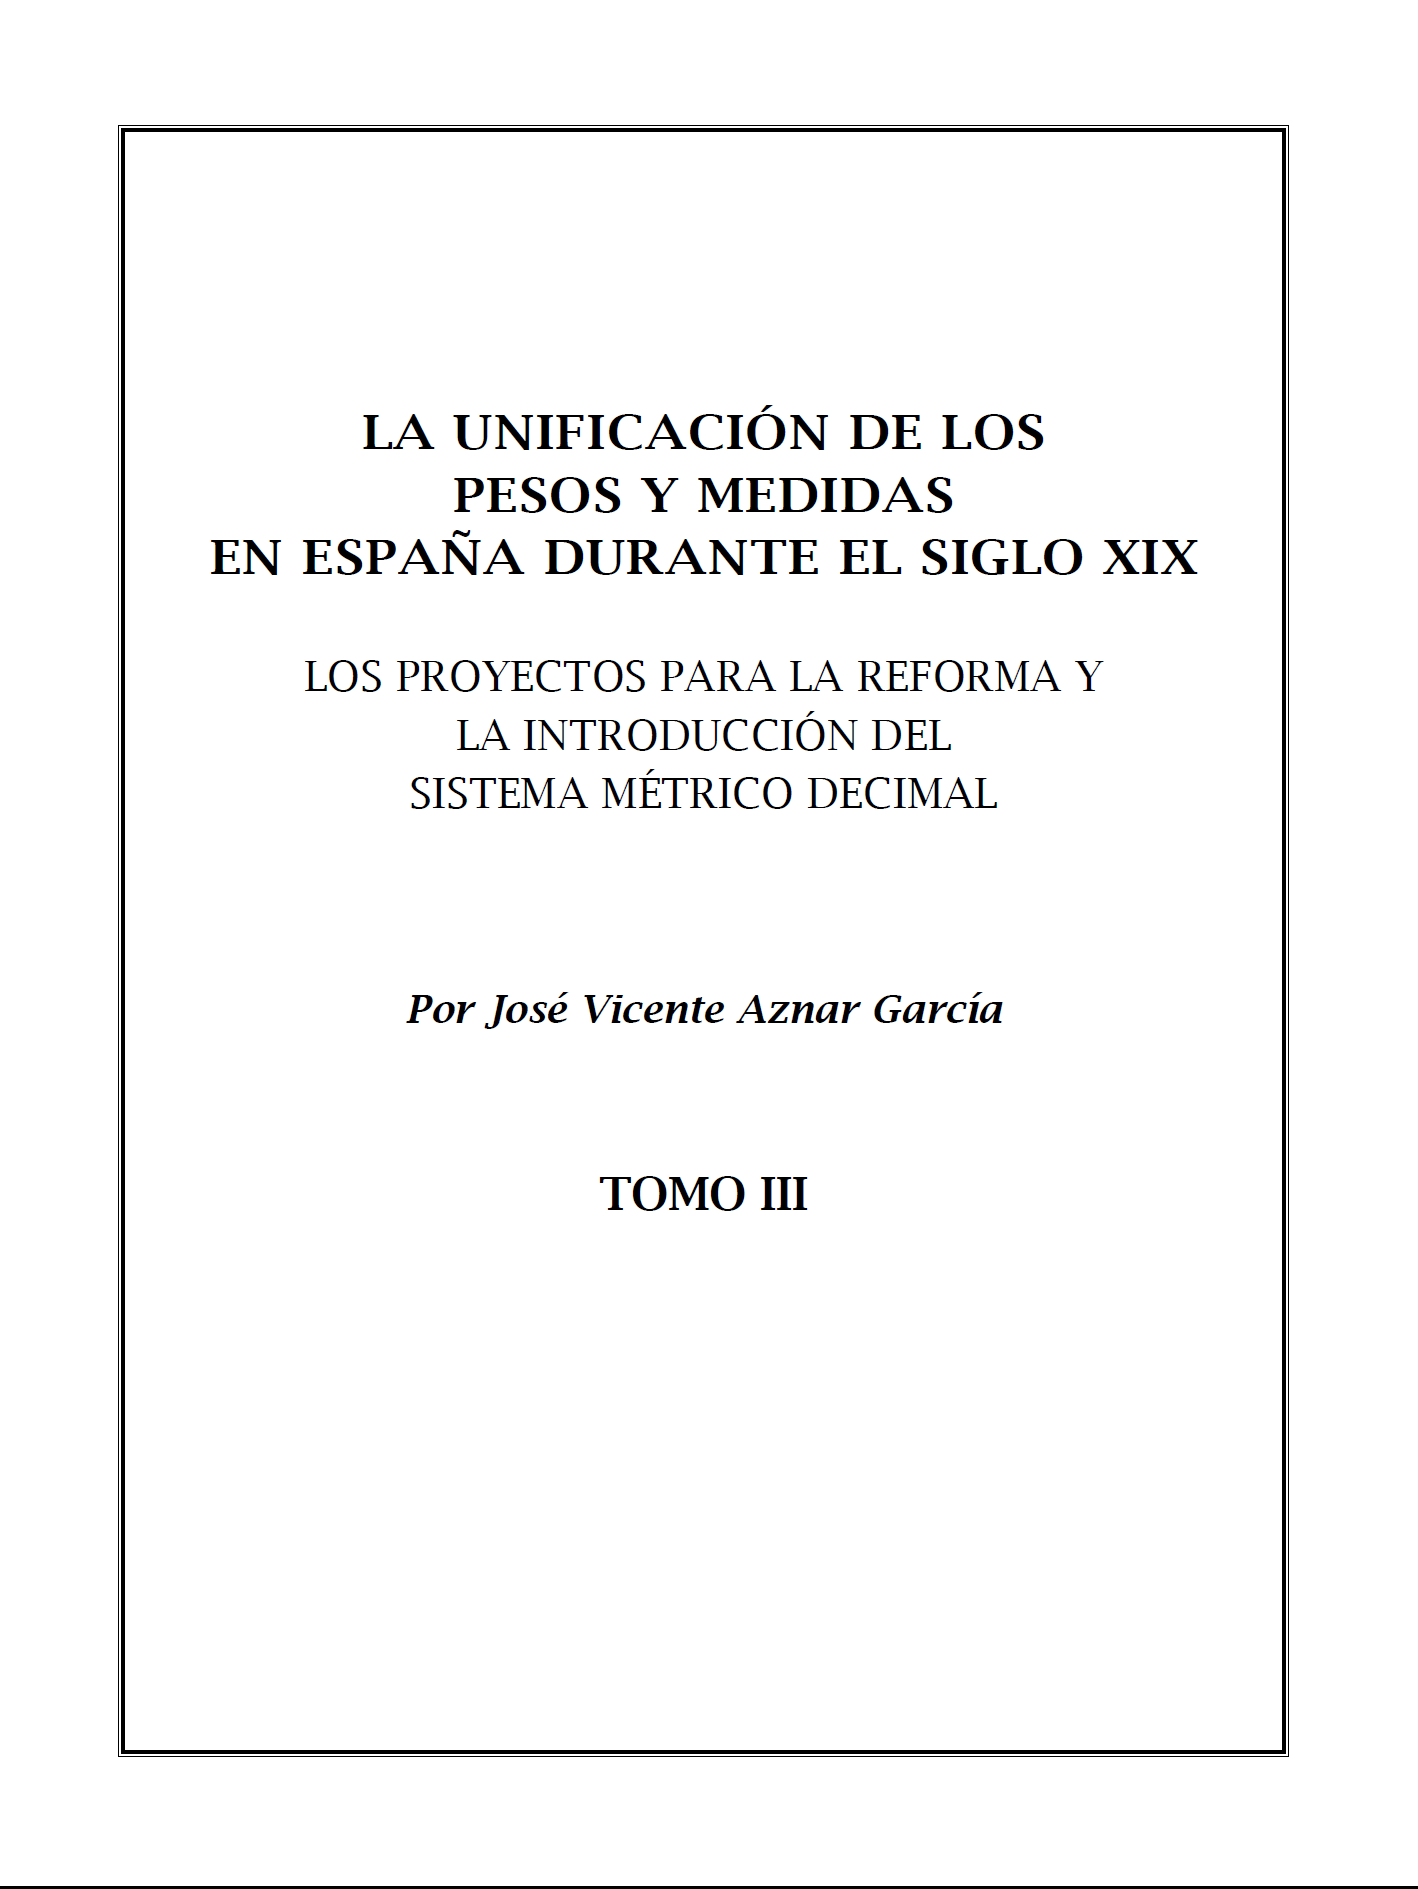 La unificación de los pesos y medidas en España durante el siglo XIX